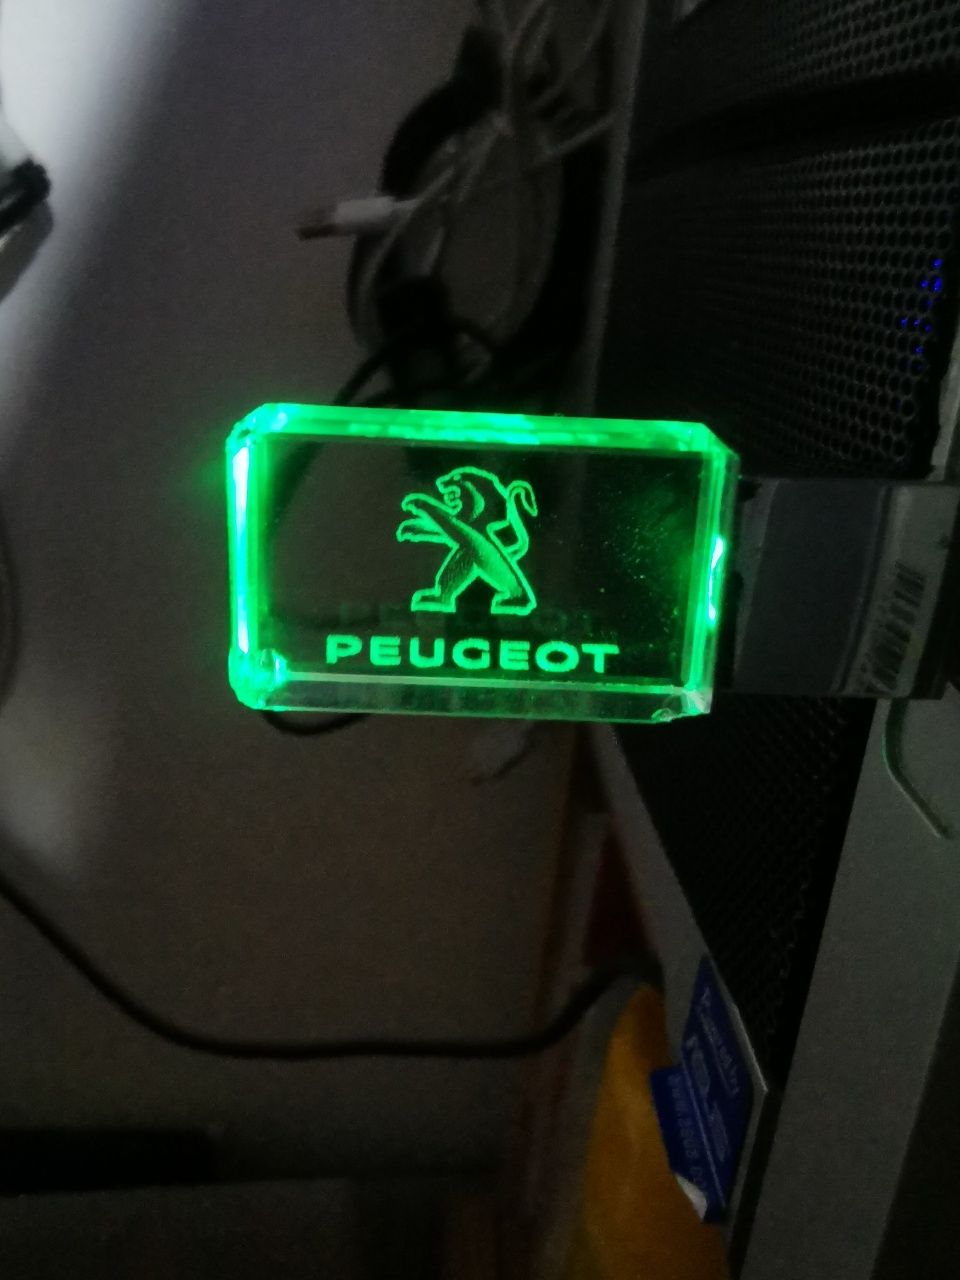 Pen memória "Peugeot " 32 GB